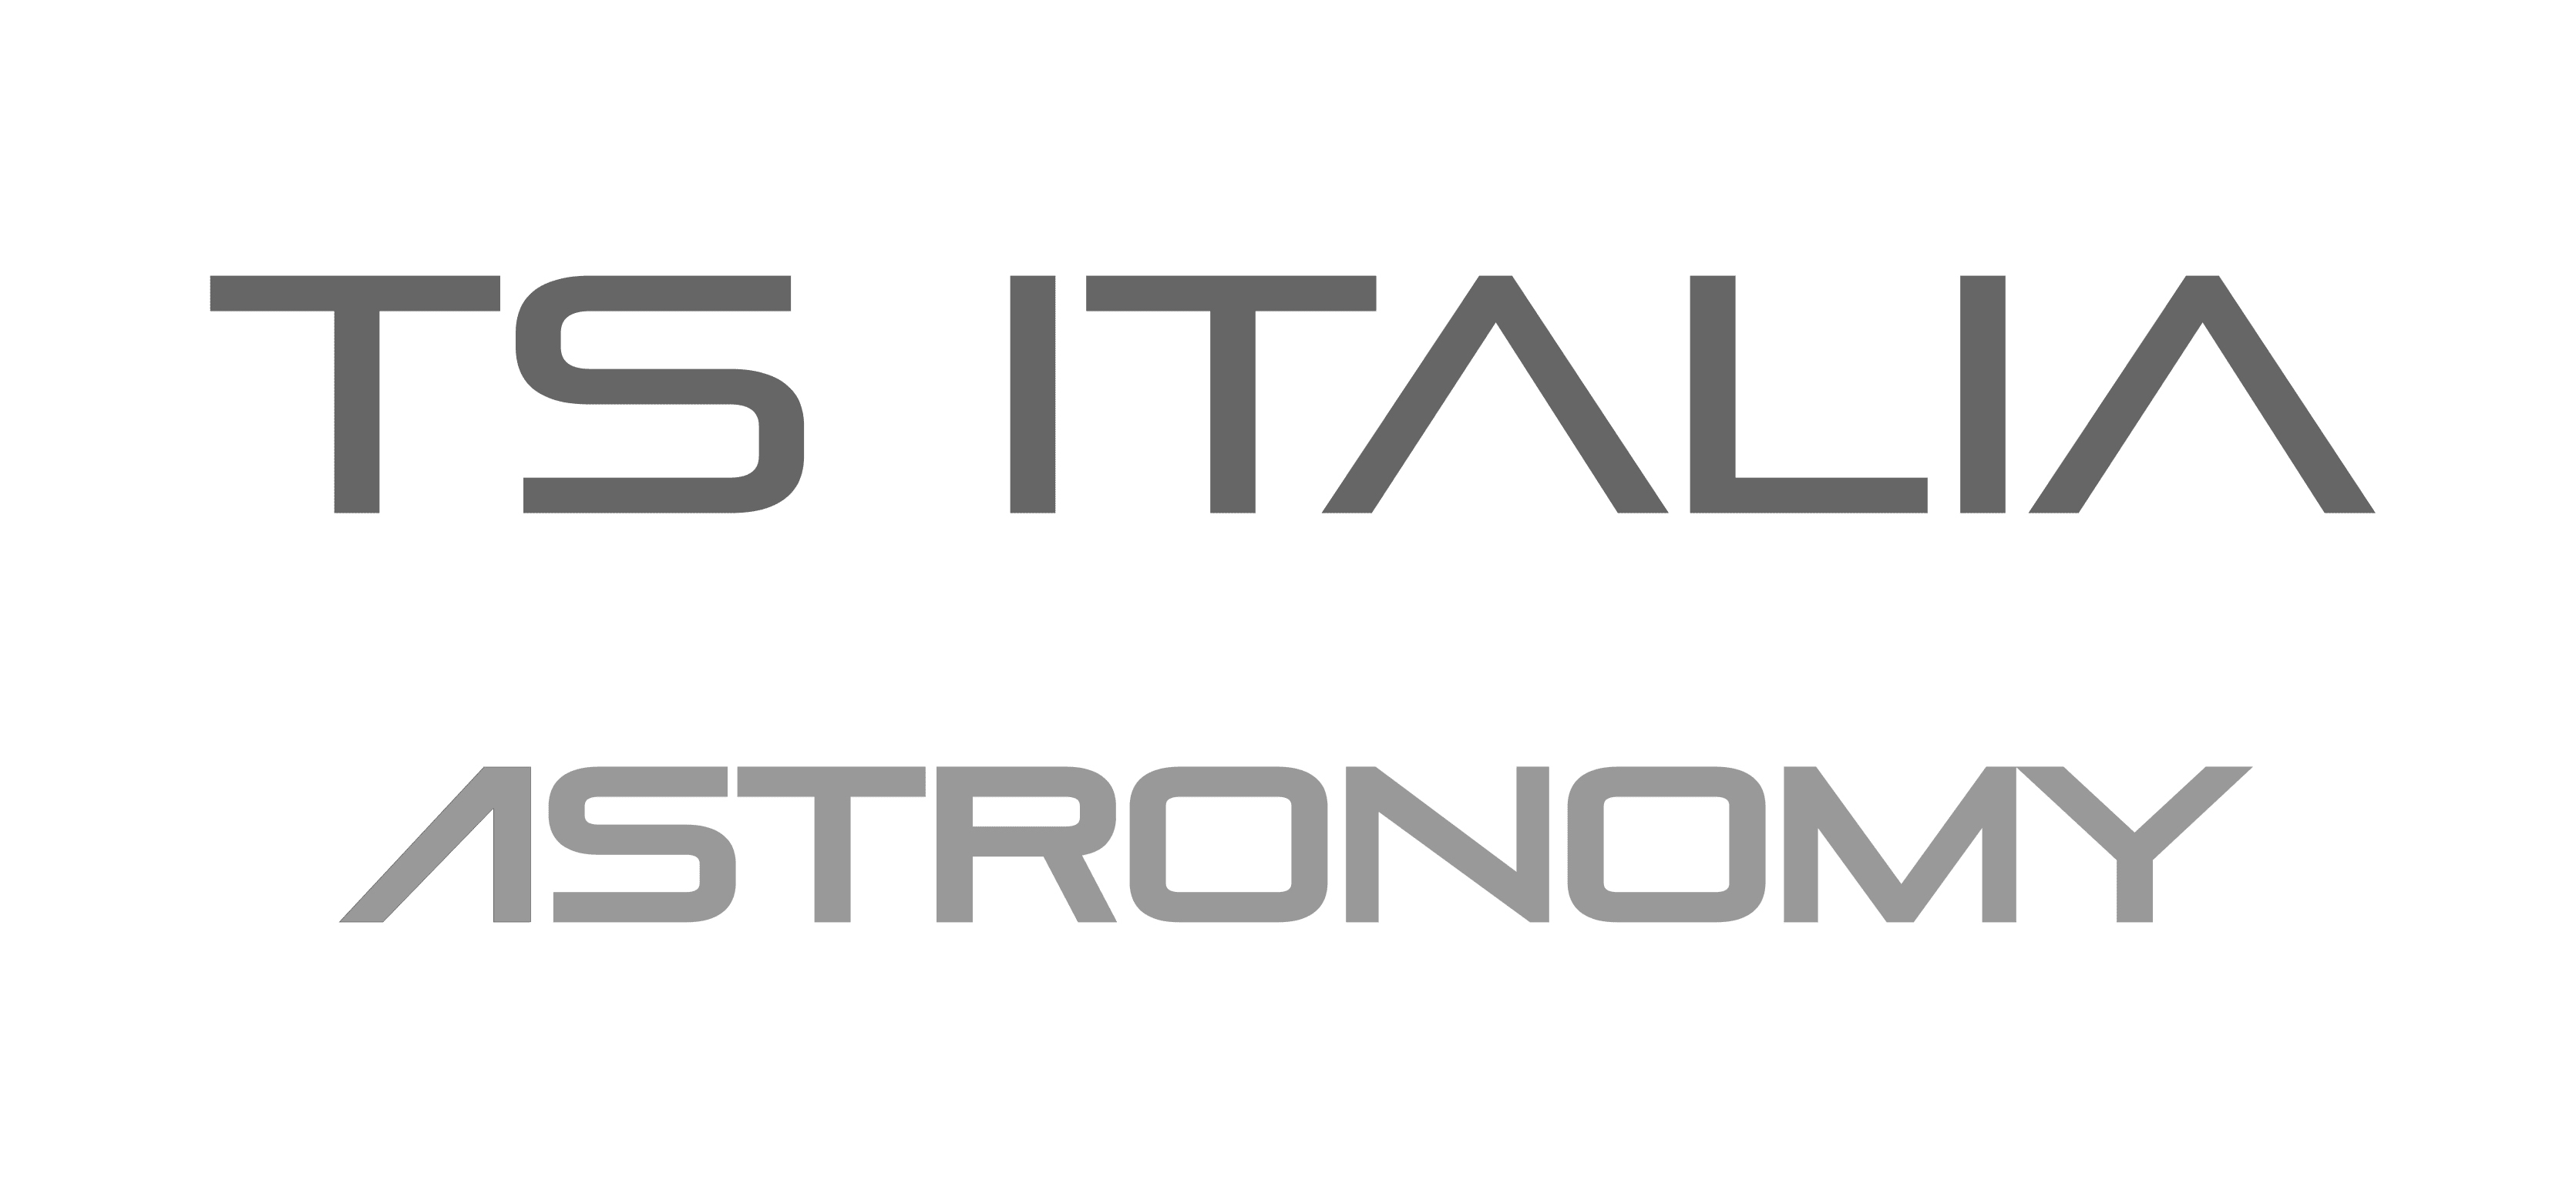 TS Italia Astronomy